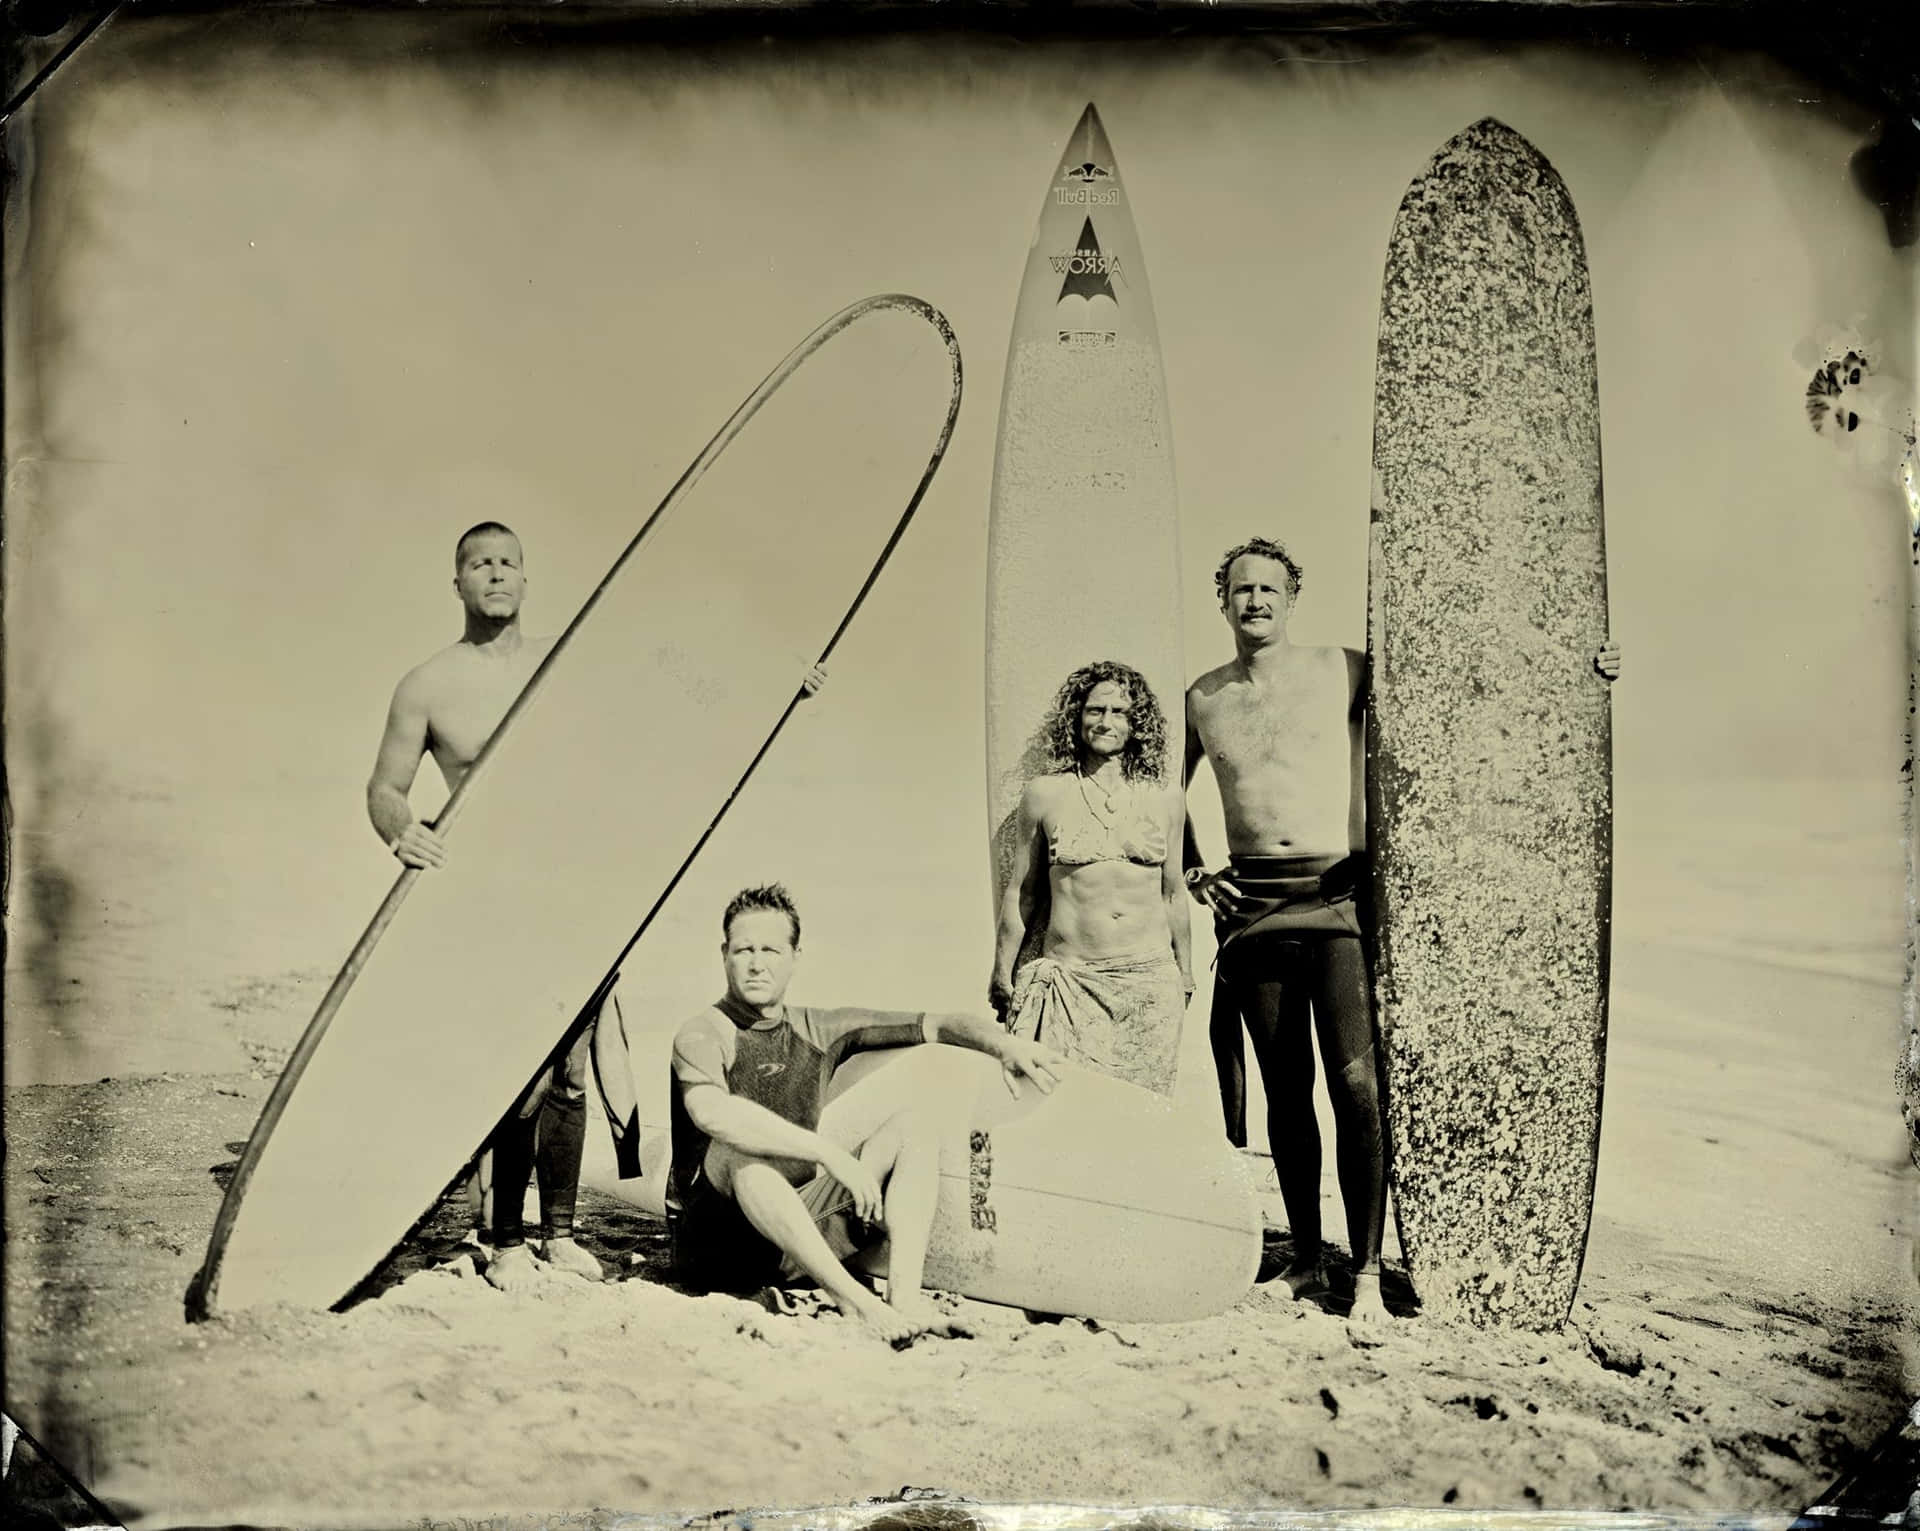 Exceptional Vintage Surf Group Portrait Wallpaper